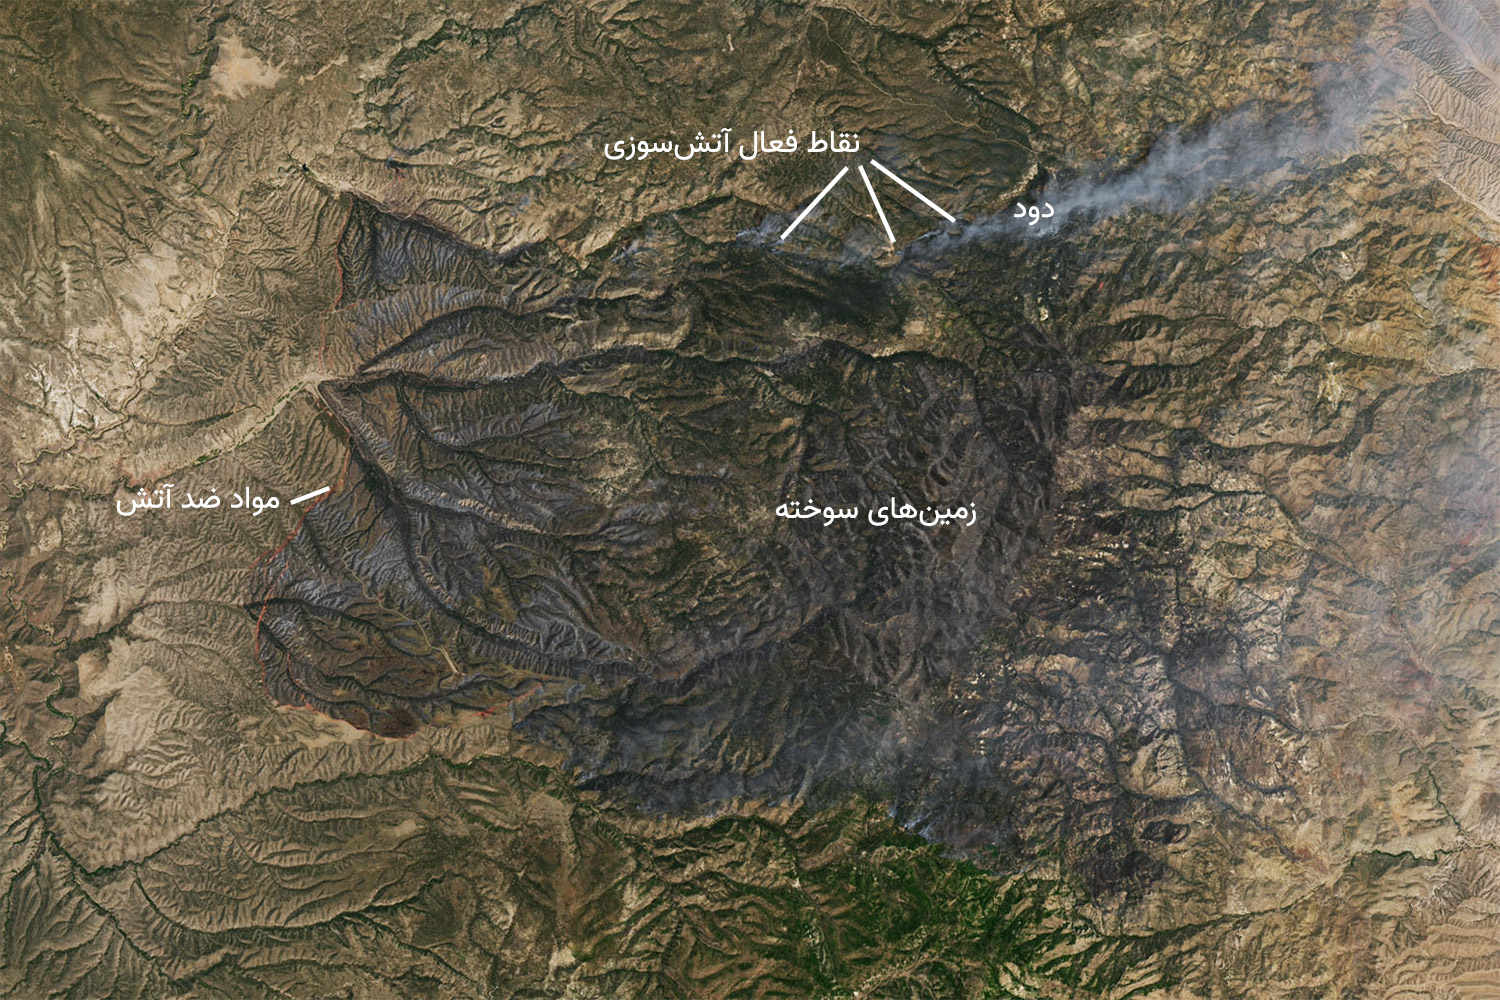 تصویر ماهواره ای لندست از آتش سوزی سیاه رنگ طبیعی